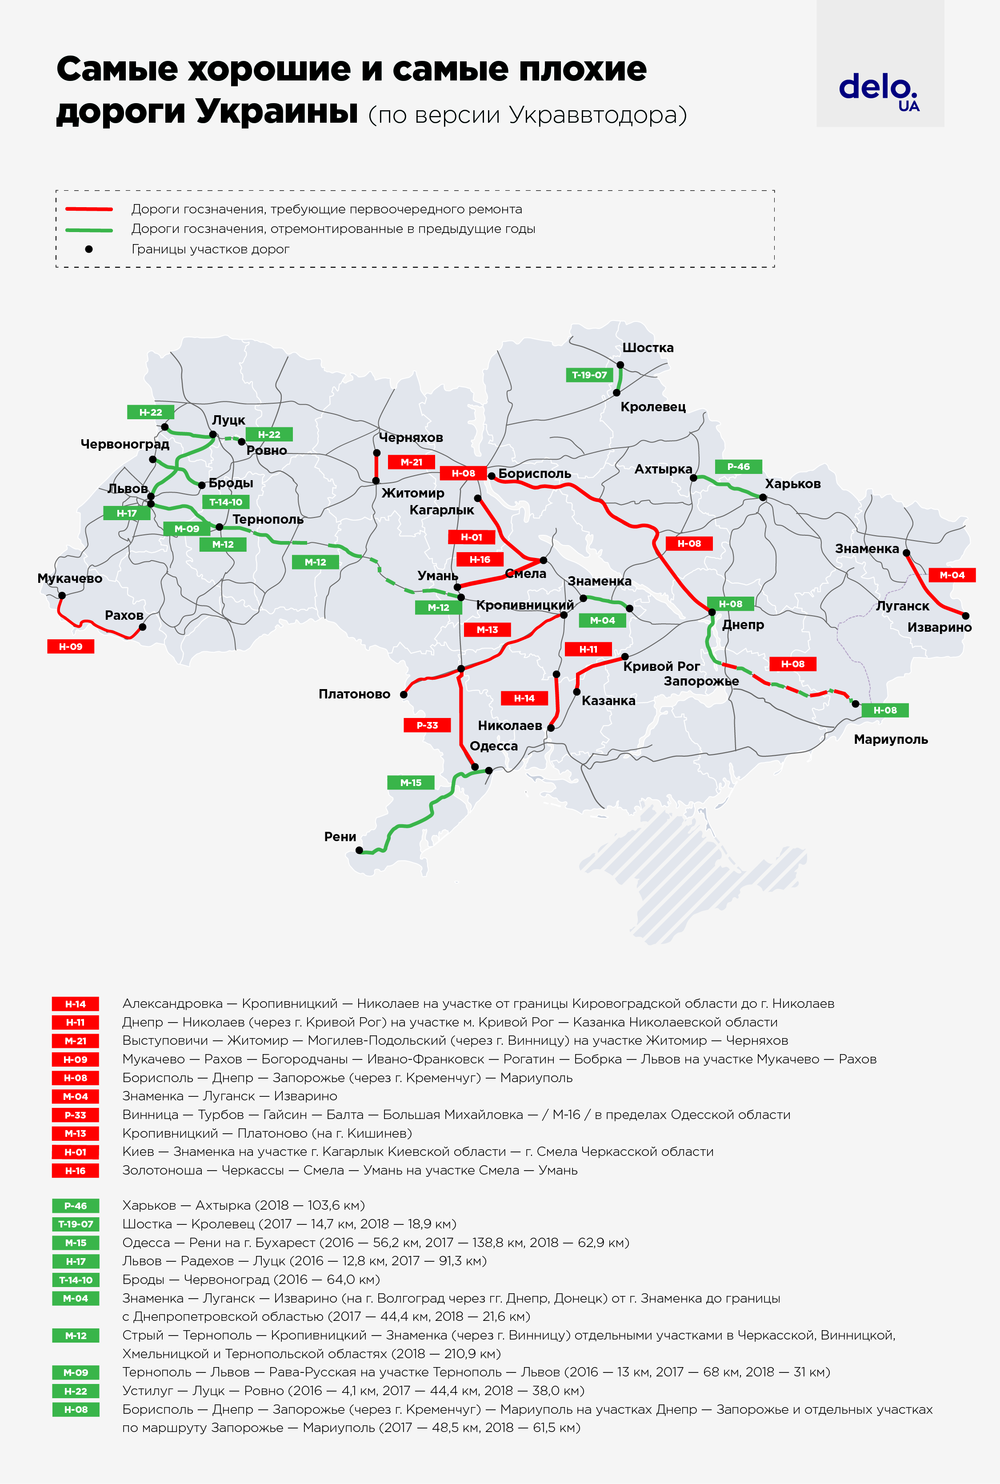 Где в Украине самые хорошие и плохие дороги: опубликованы инфографики